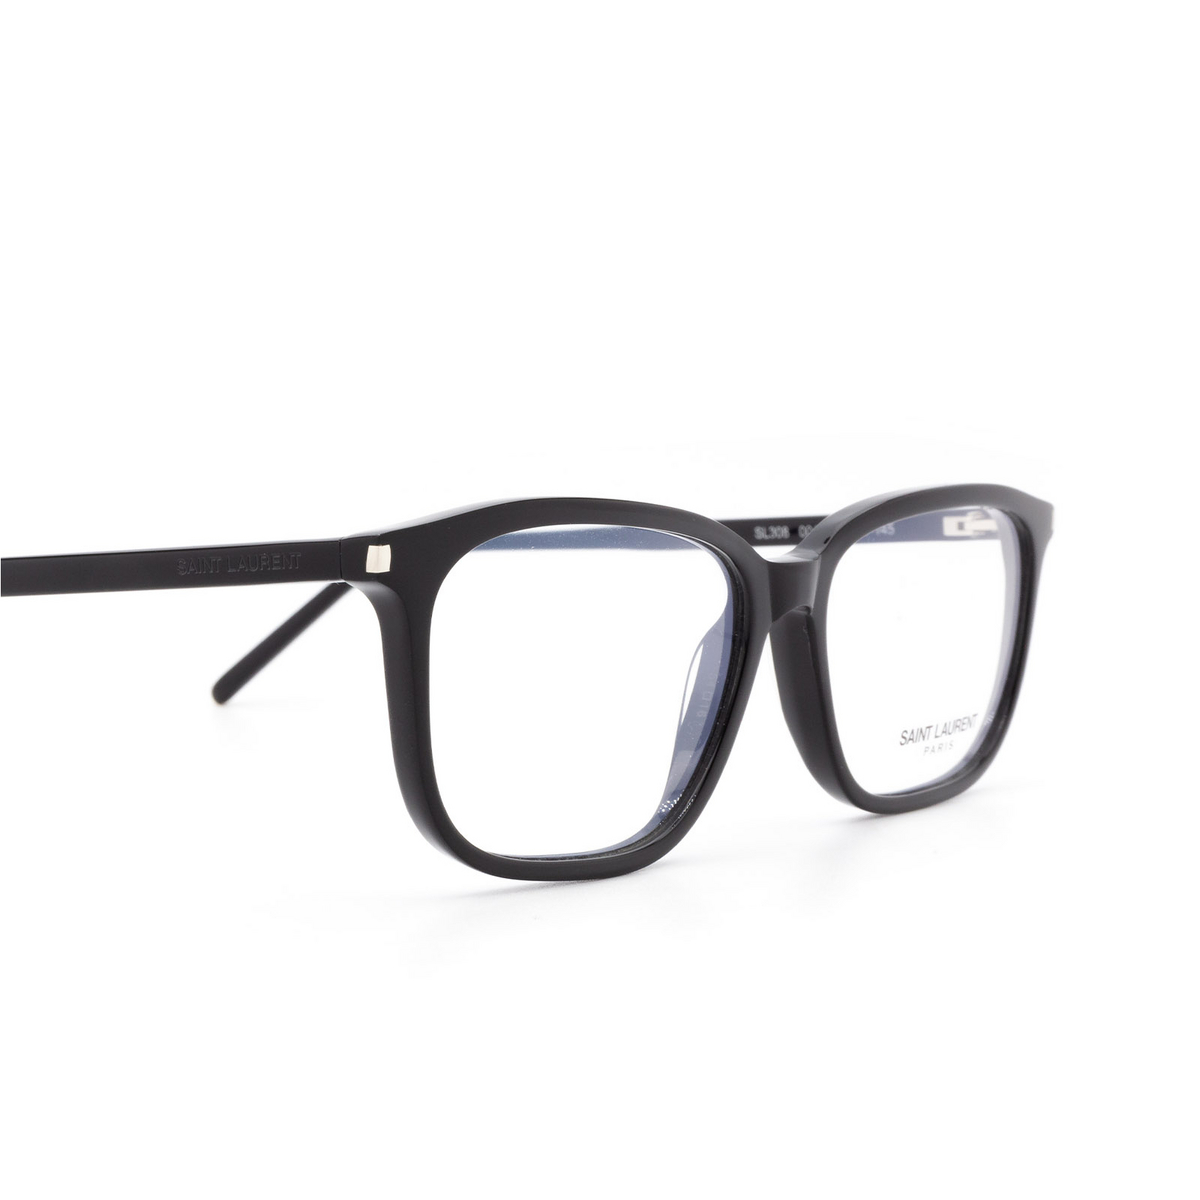 Saint Laurent® Rectangle Eyeglasses: SL 308 color 001 - 3/3.